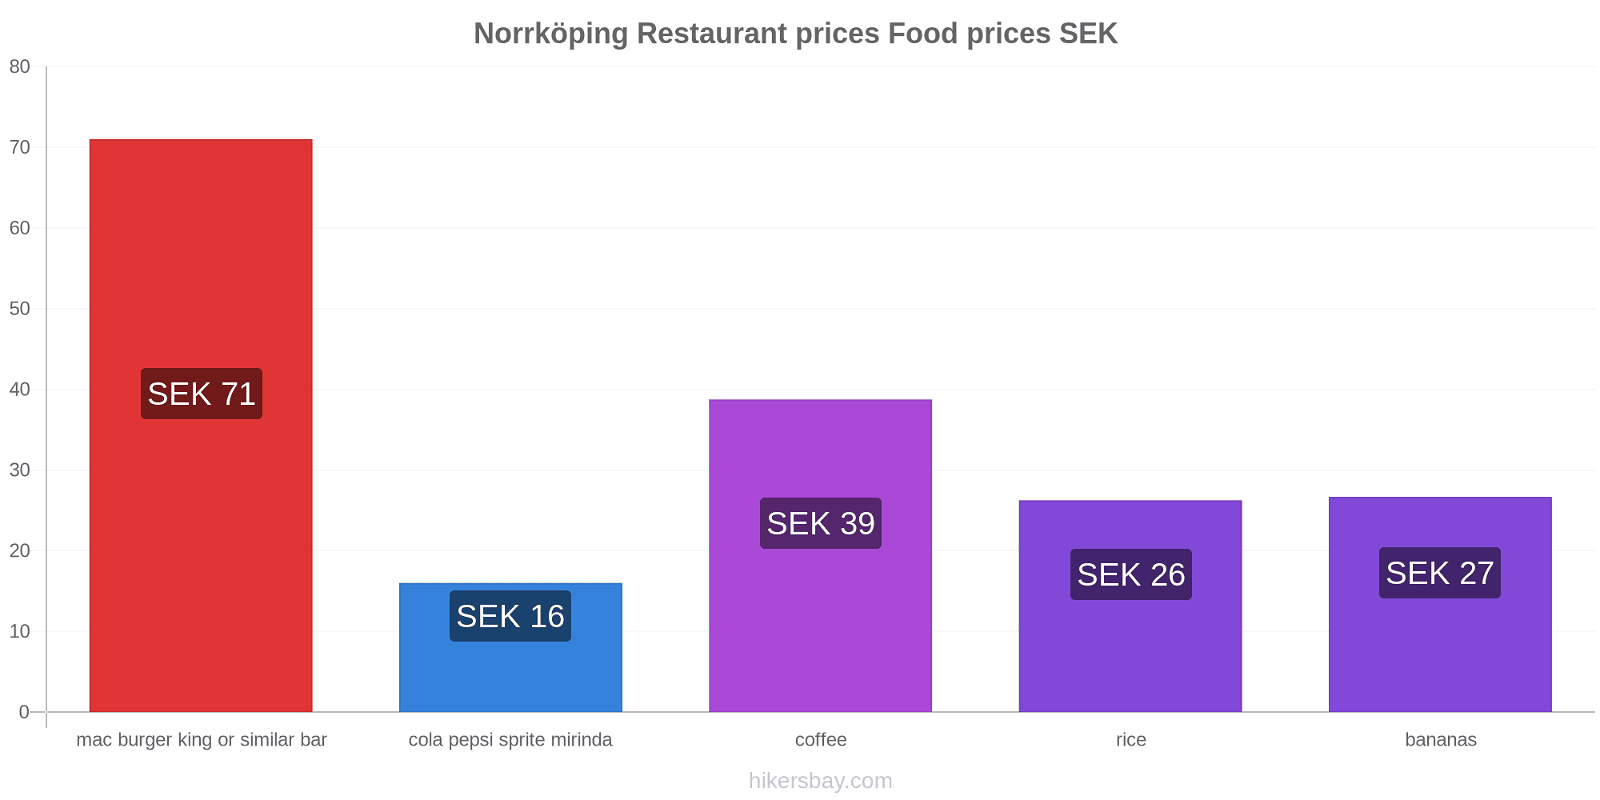 Norrköping price changes hikersbay.com